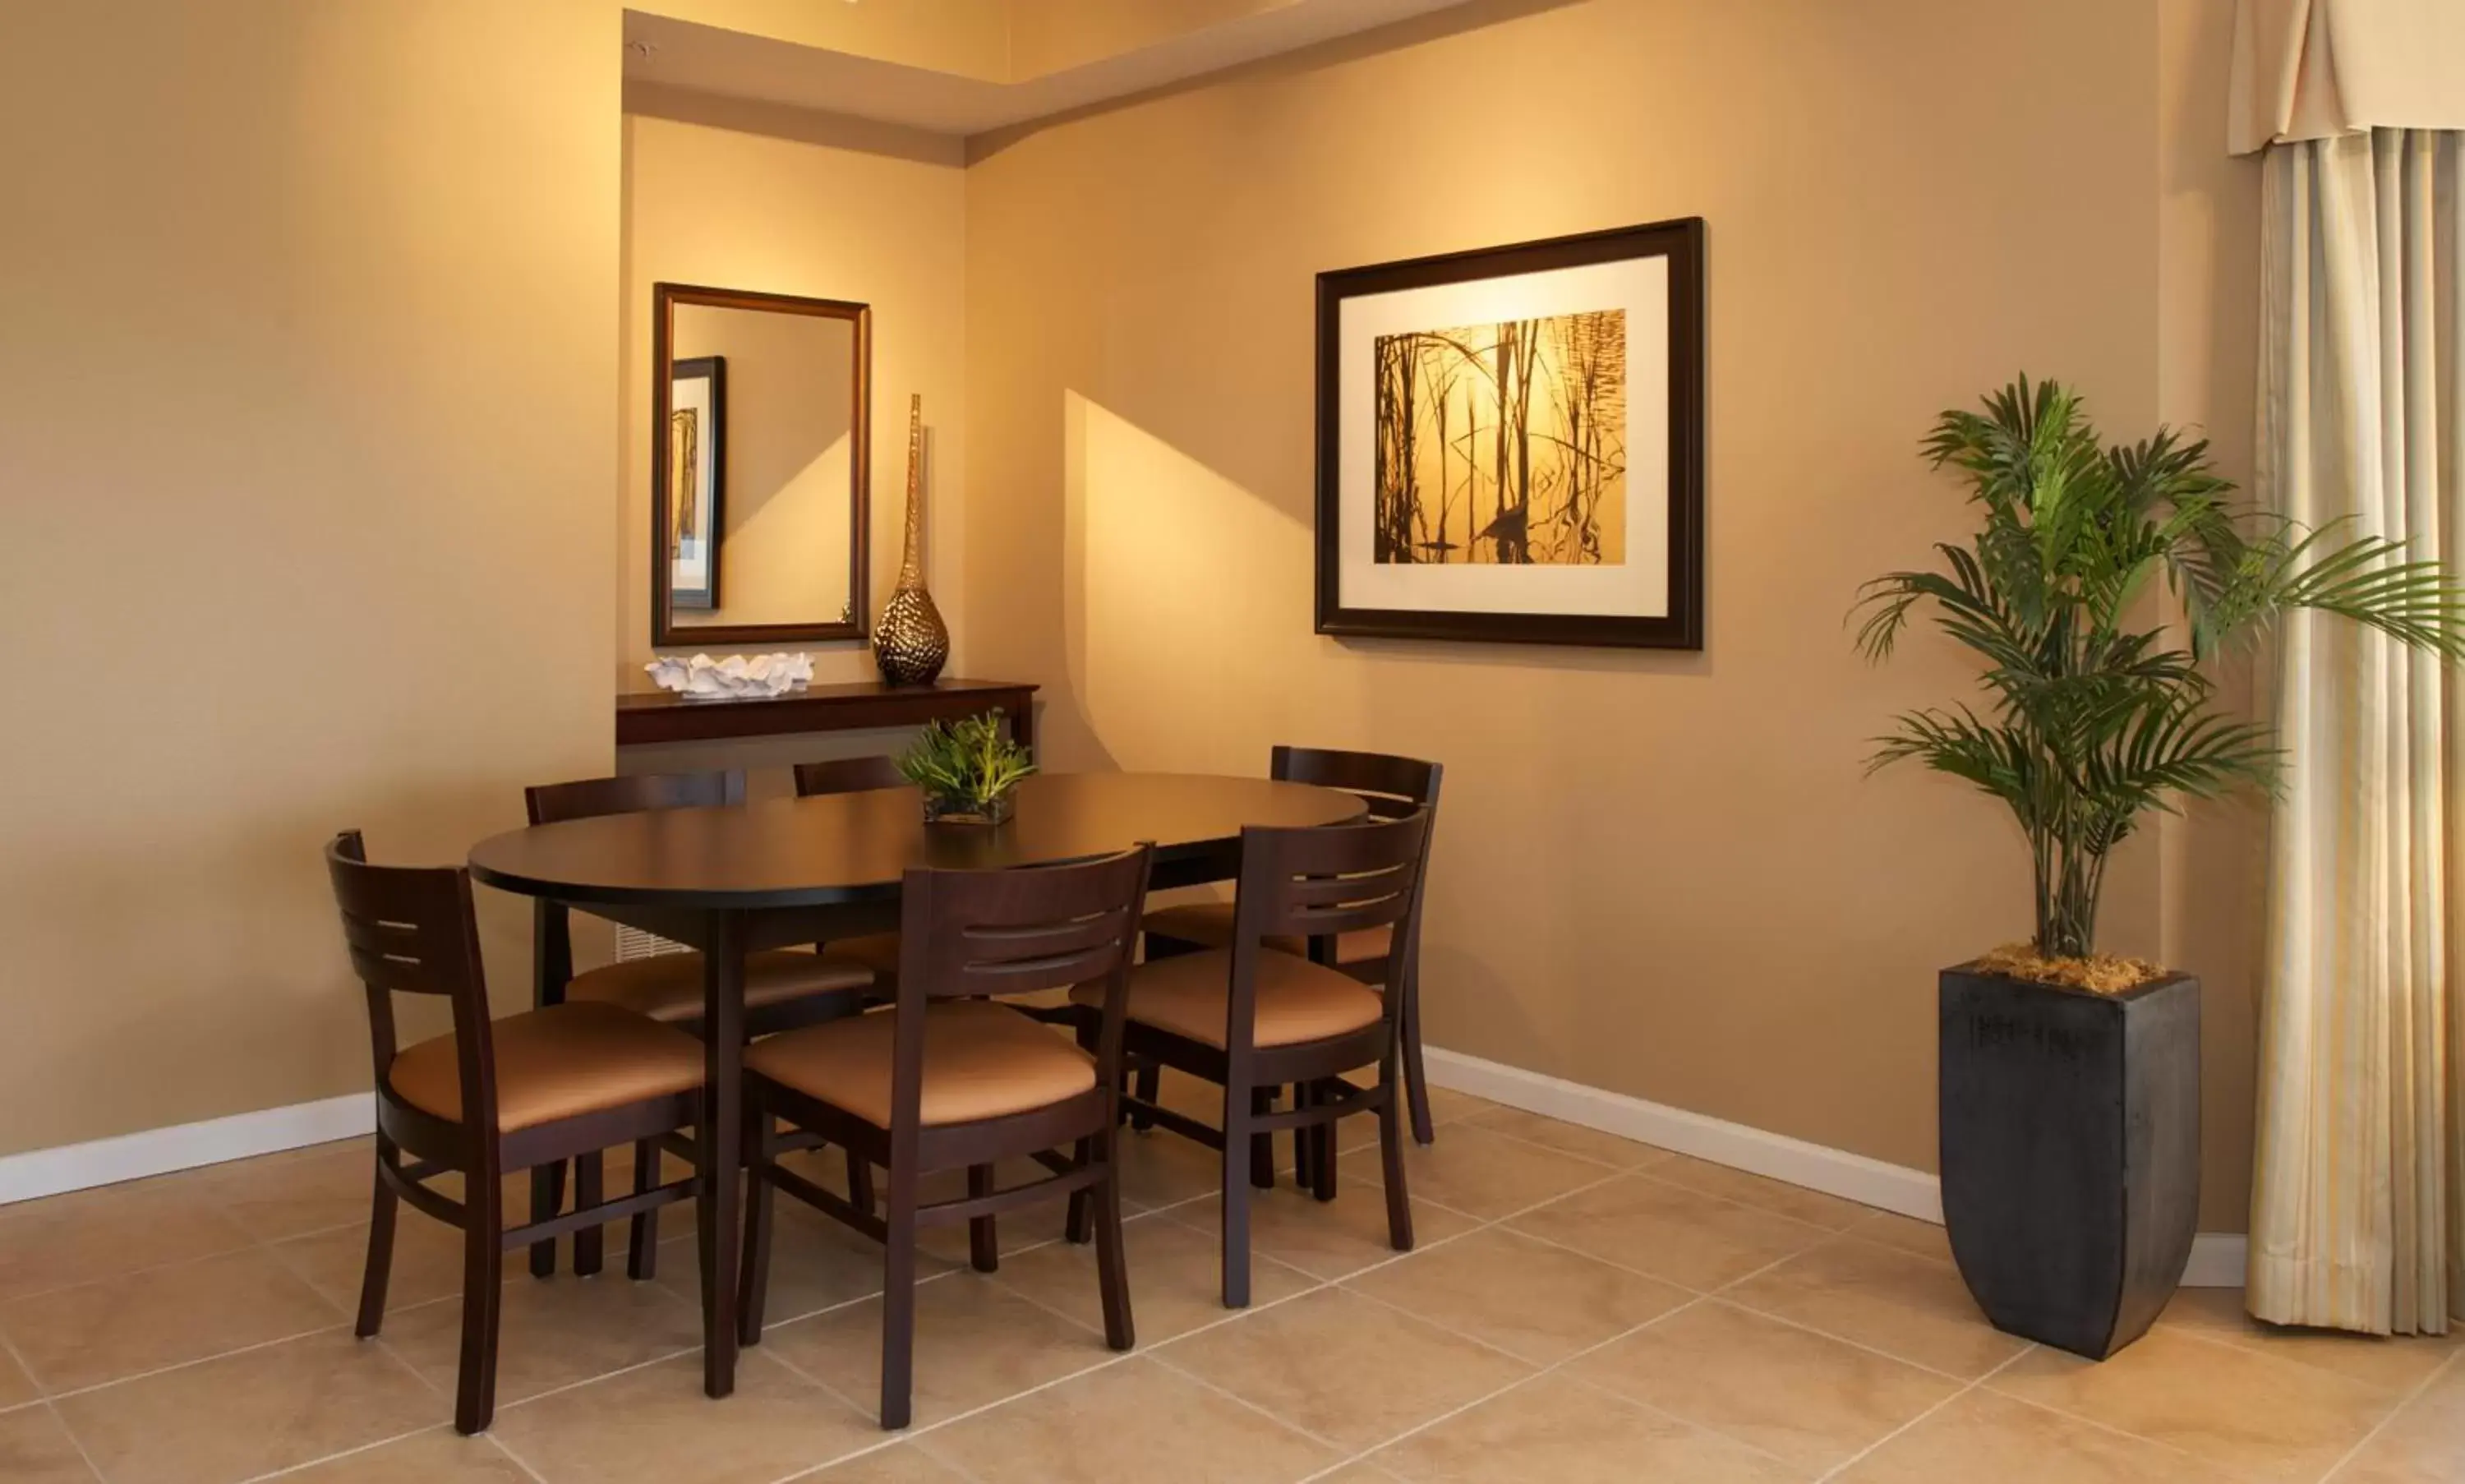 Decorative detail, Dining Area in WorldQuest Orlando Resort